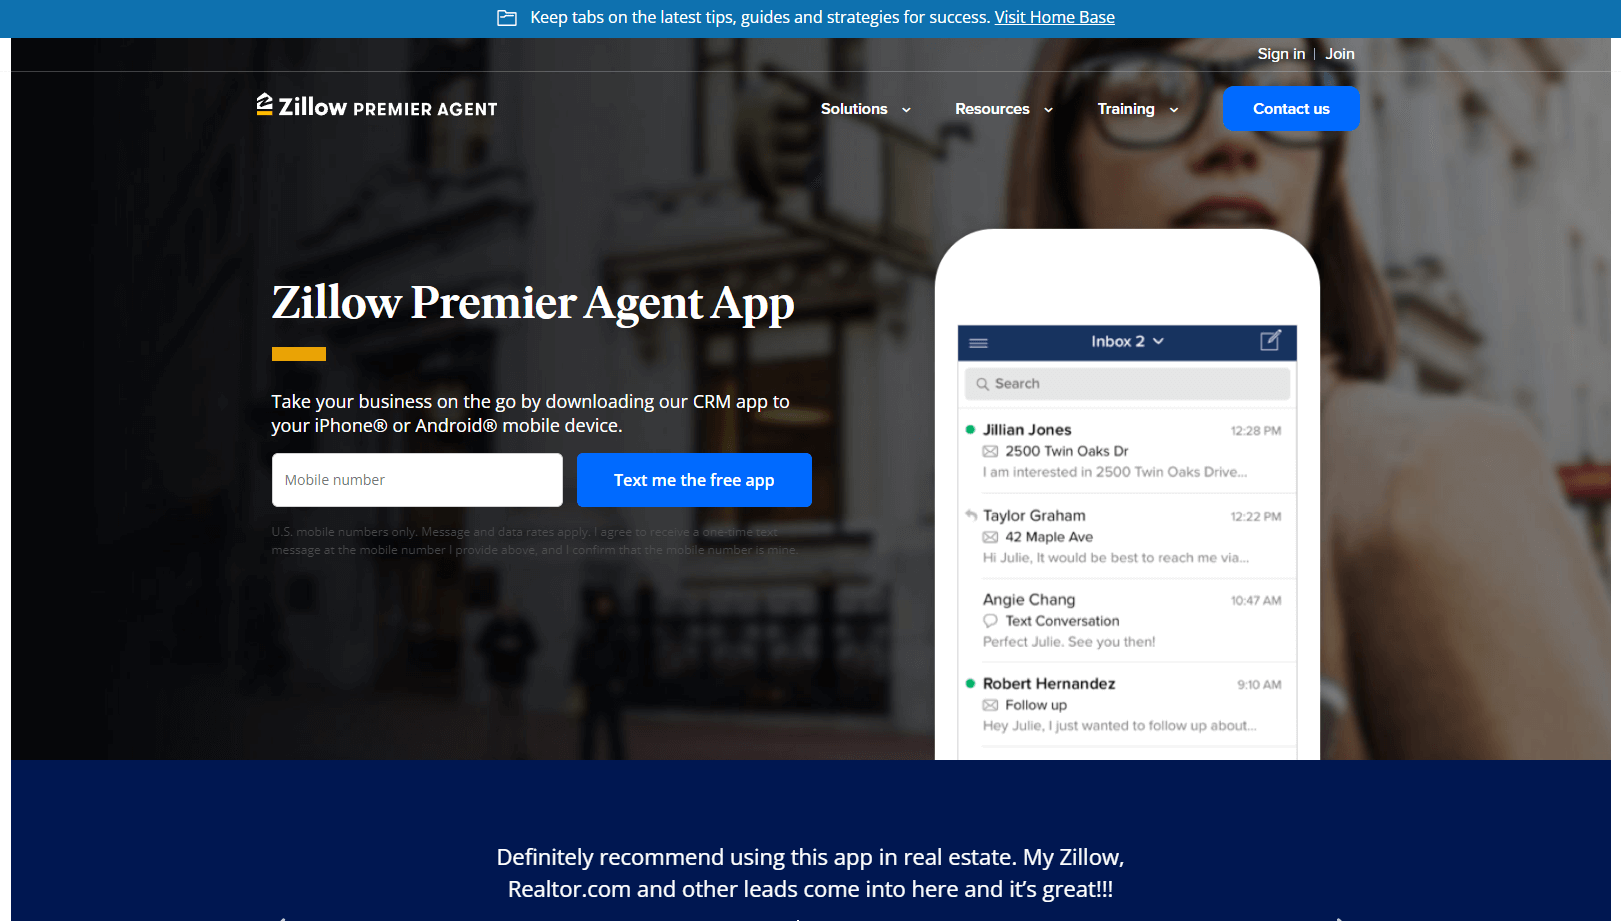 Zillow Premier Agent App